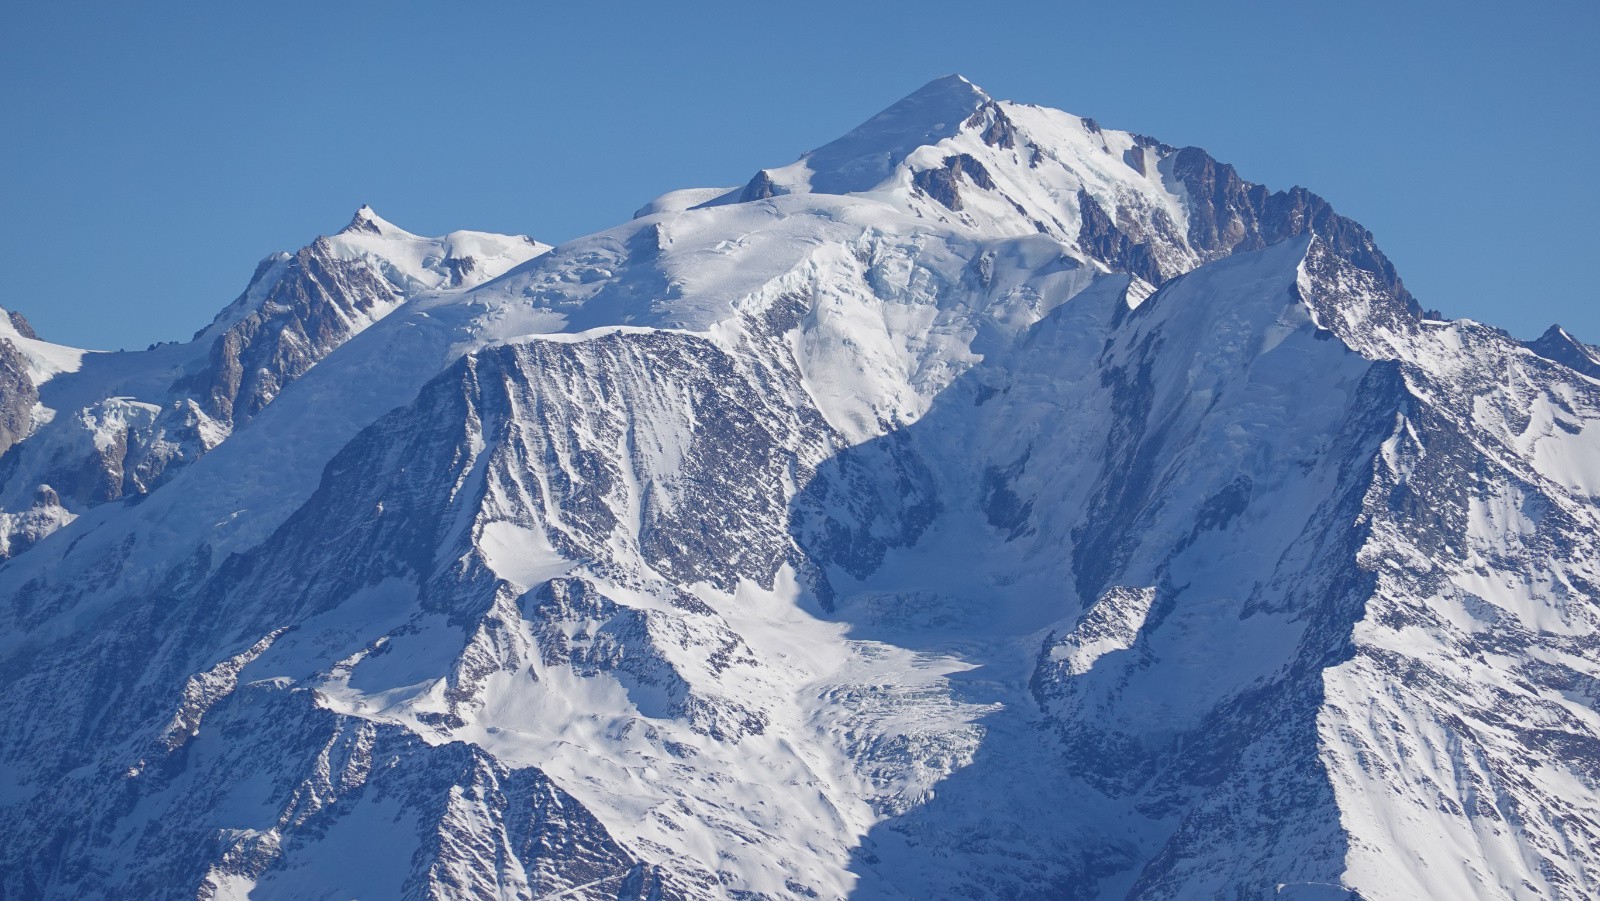 Panorama depuis le Col du Midi, Mont-Blanc du Tacul, Mont Maudit, Aiguille et Dôme du Goûter, Mont-Blanc et Aiguille de Bionnassay